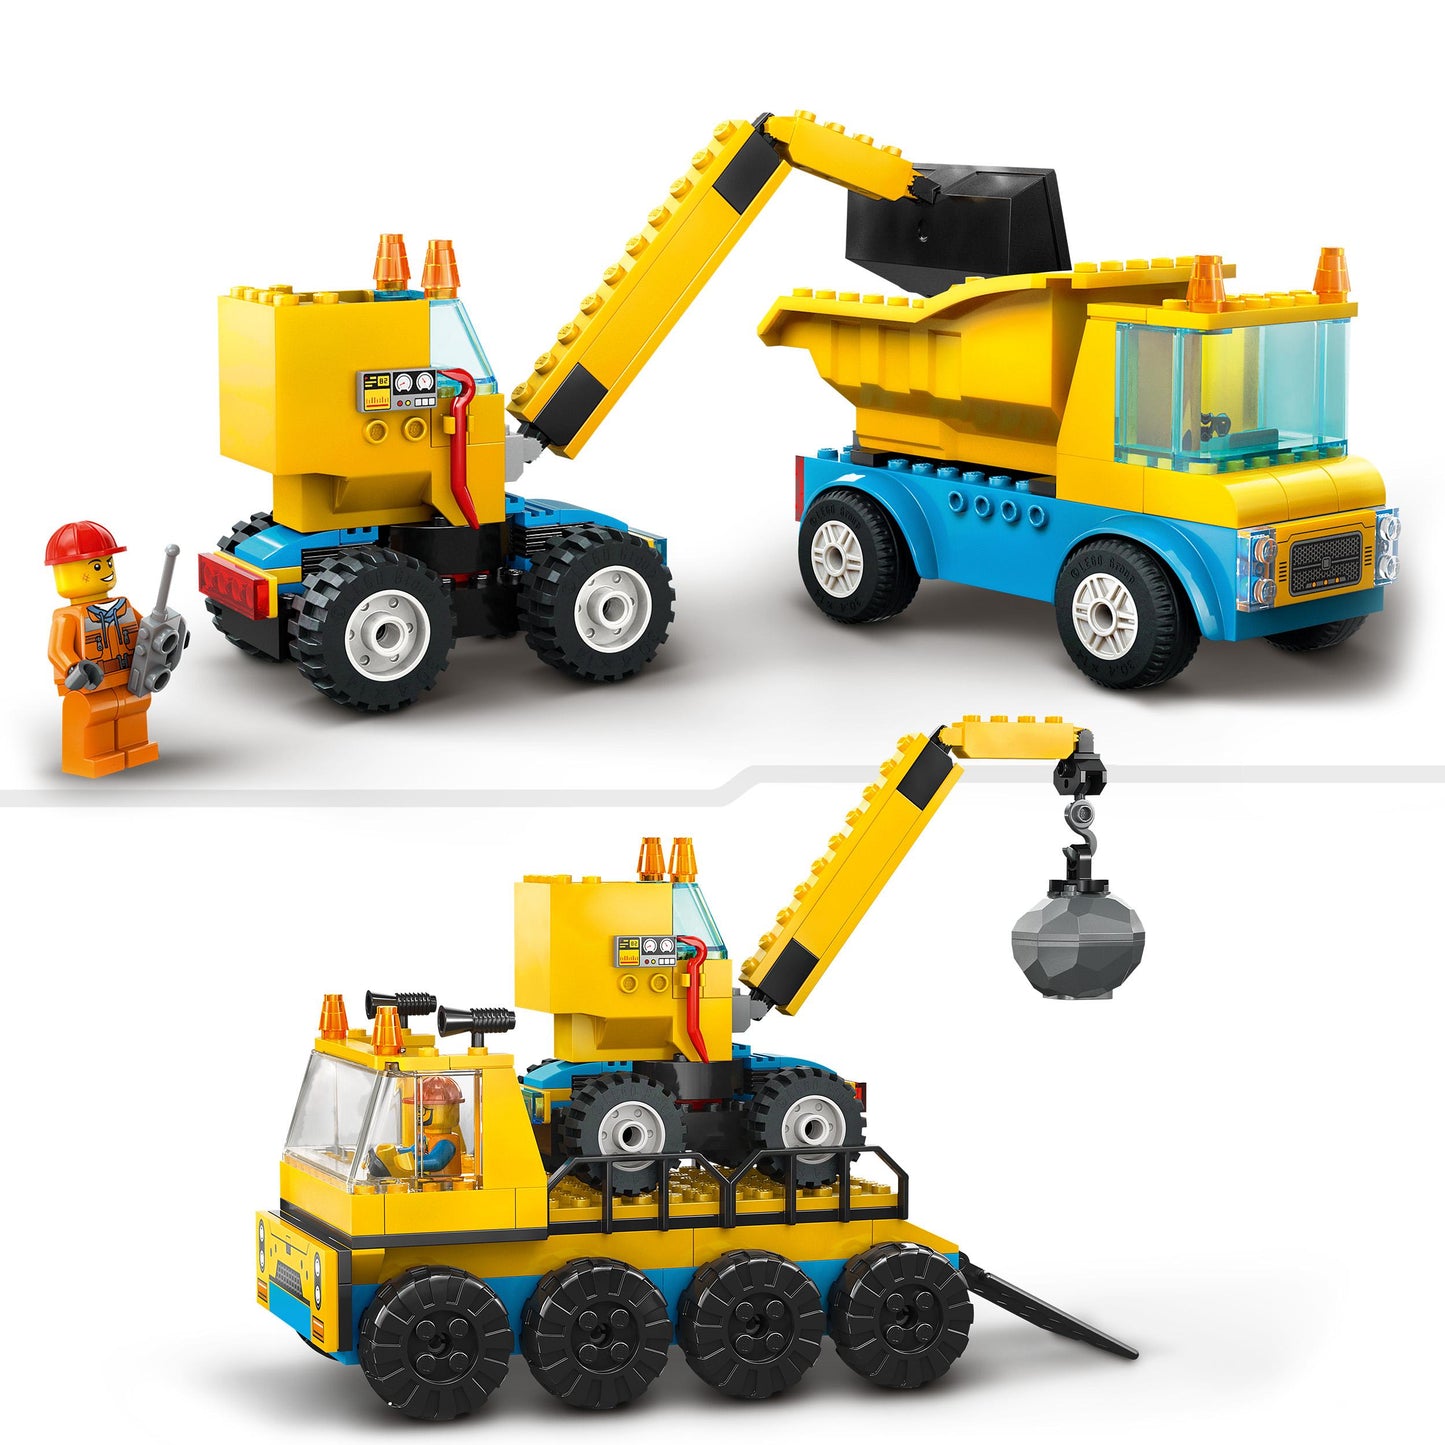 60391 LEGO City - Camion da cantiere e gru con palla da demolizione